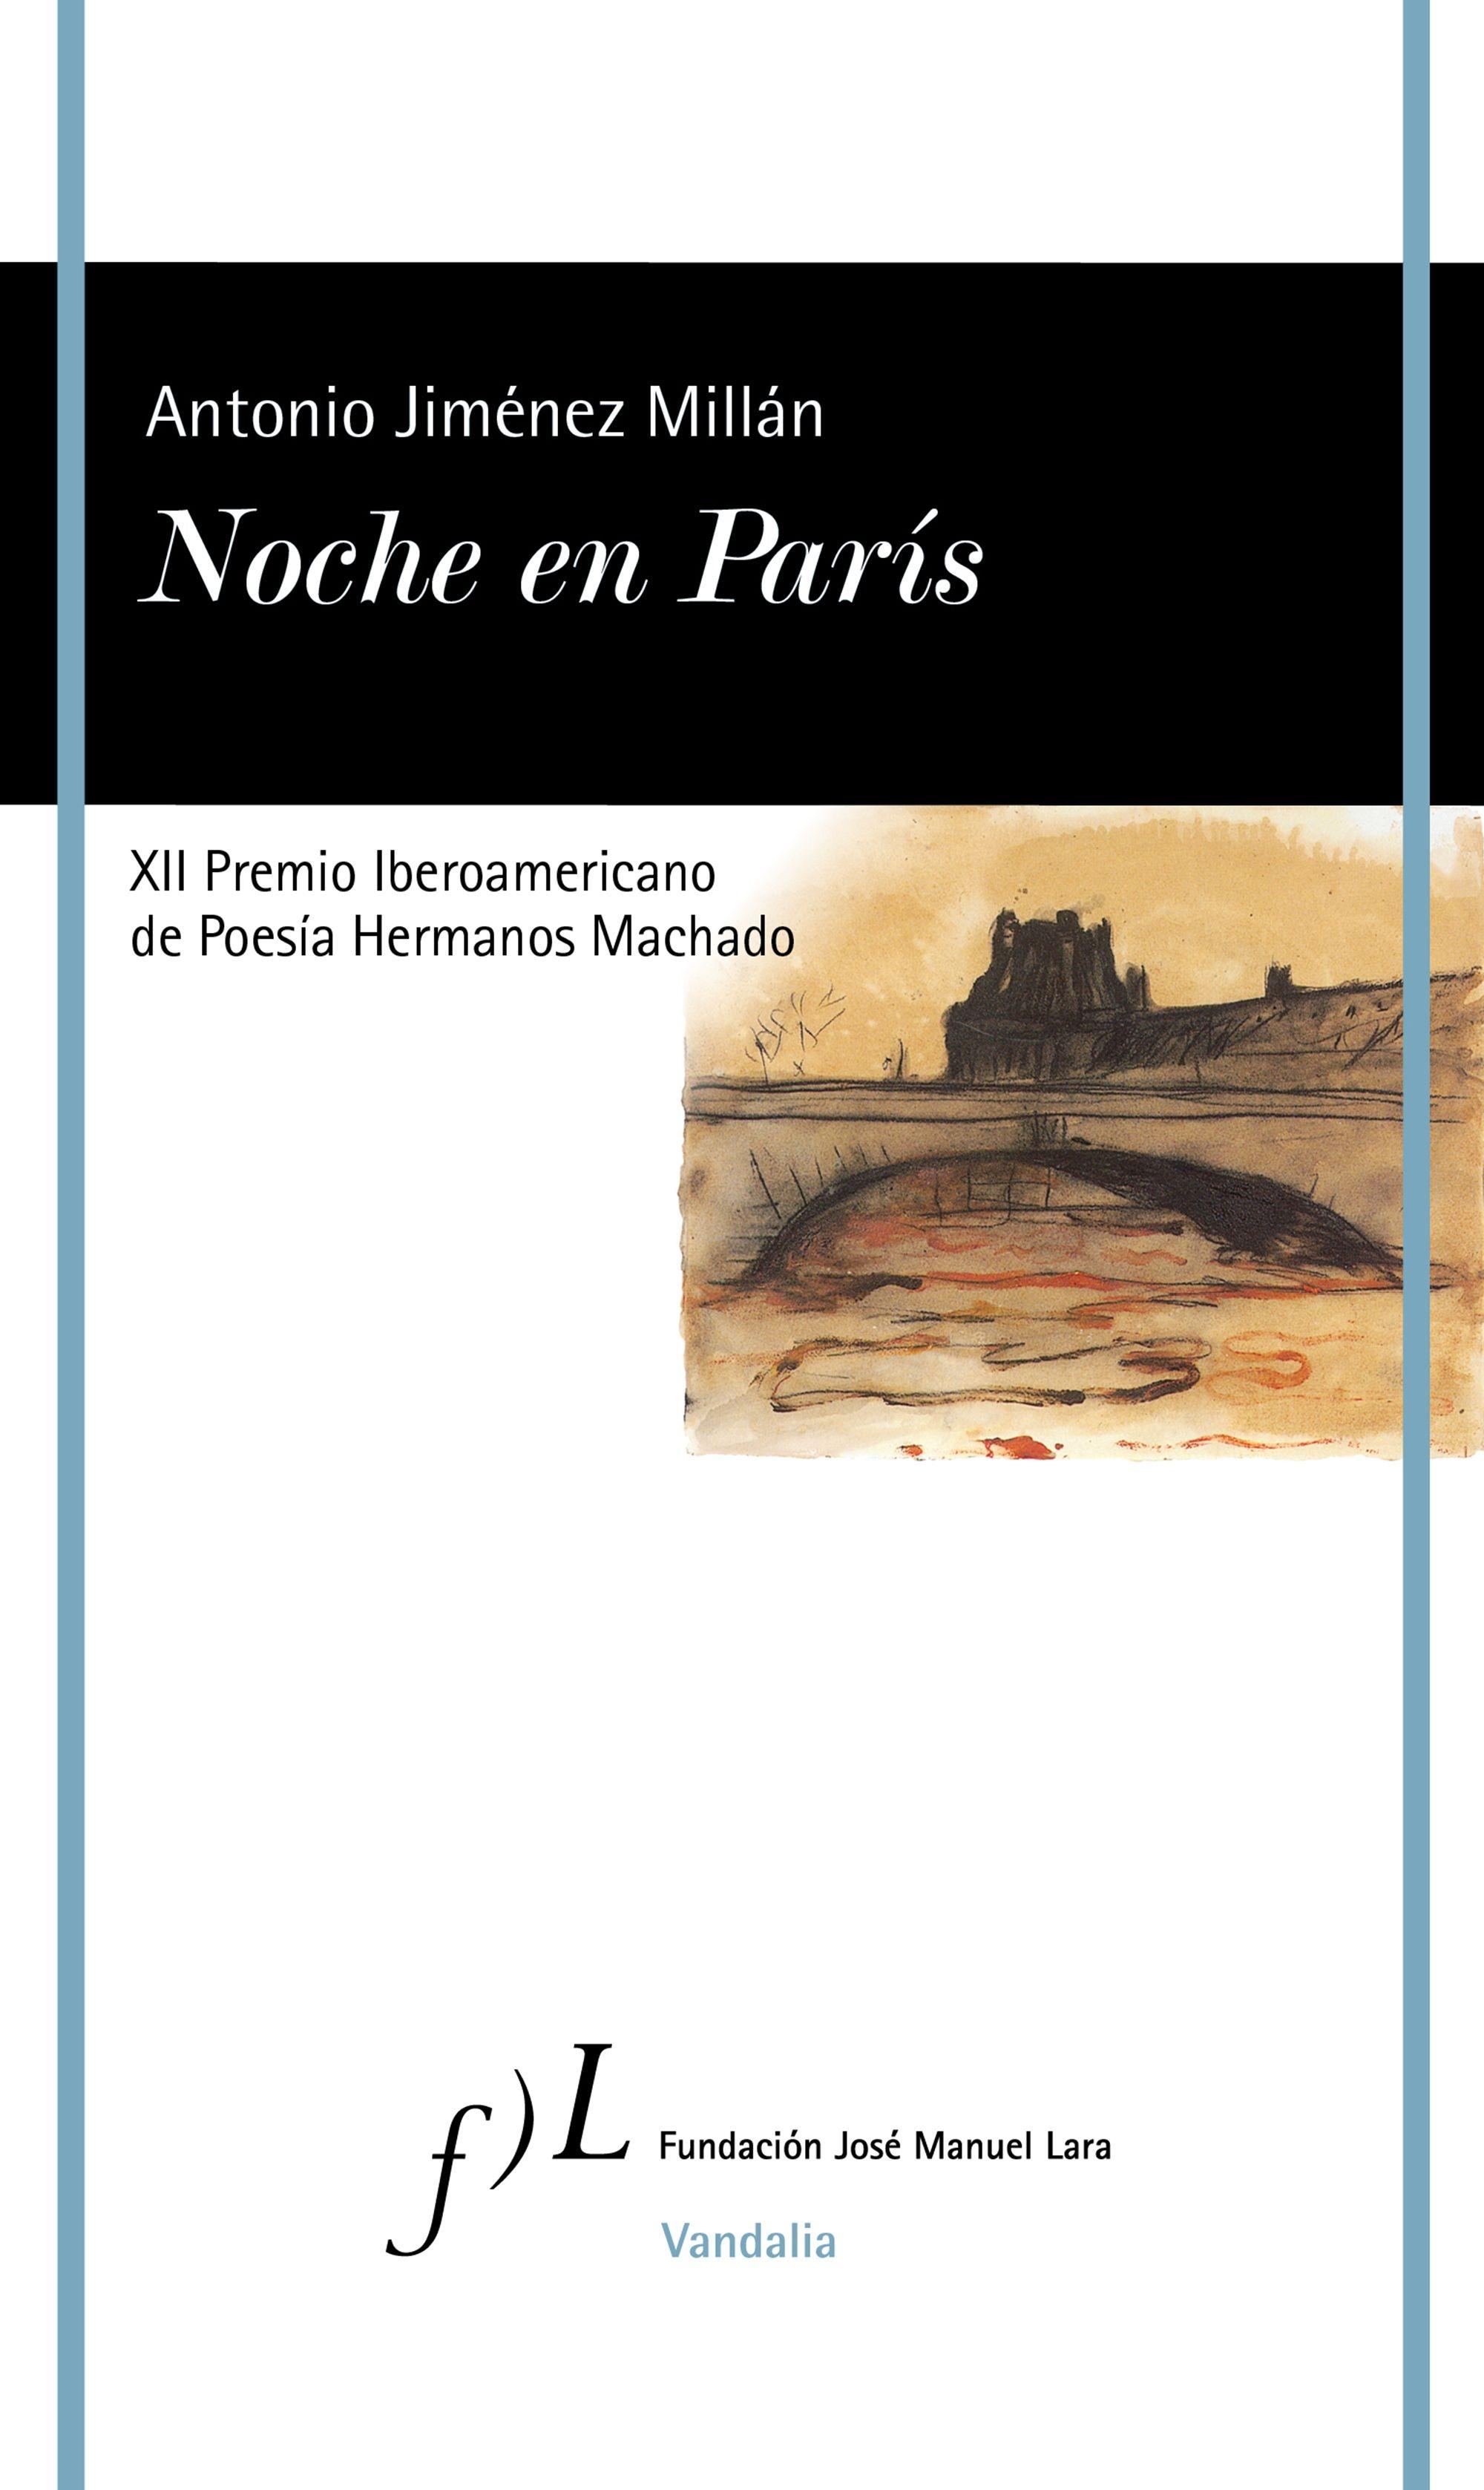 Noche en París "XII Premio Iberoamericano de Poesía Hermanos Machado"